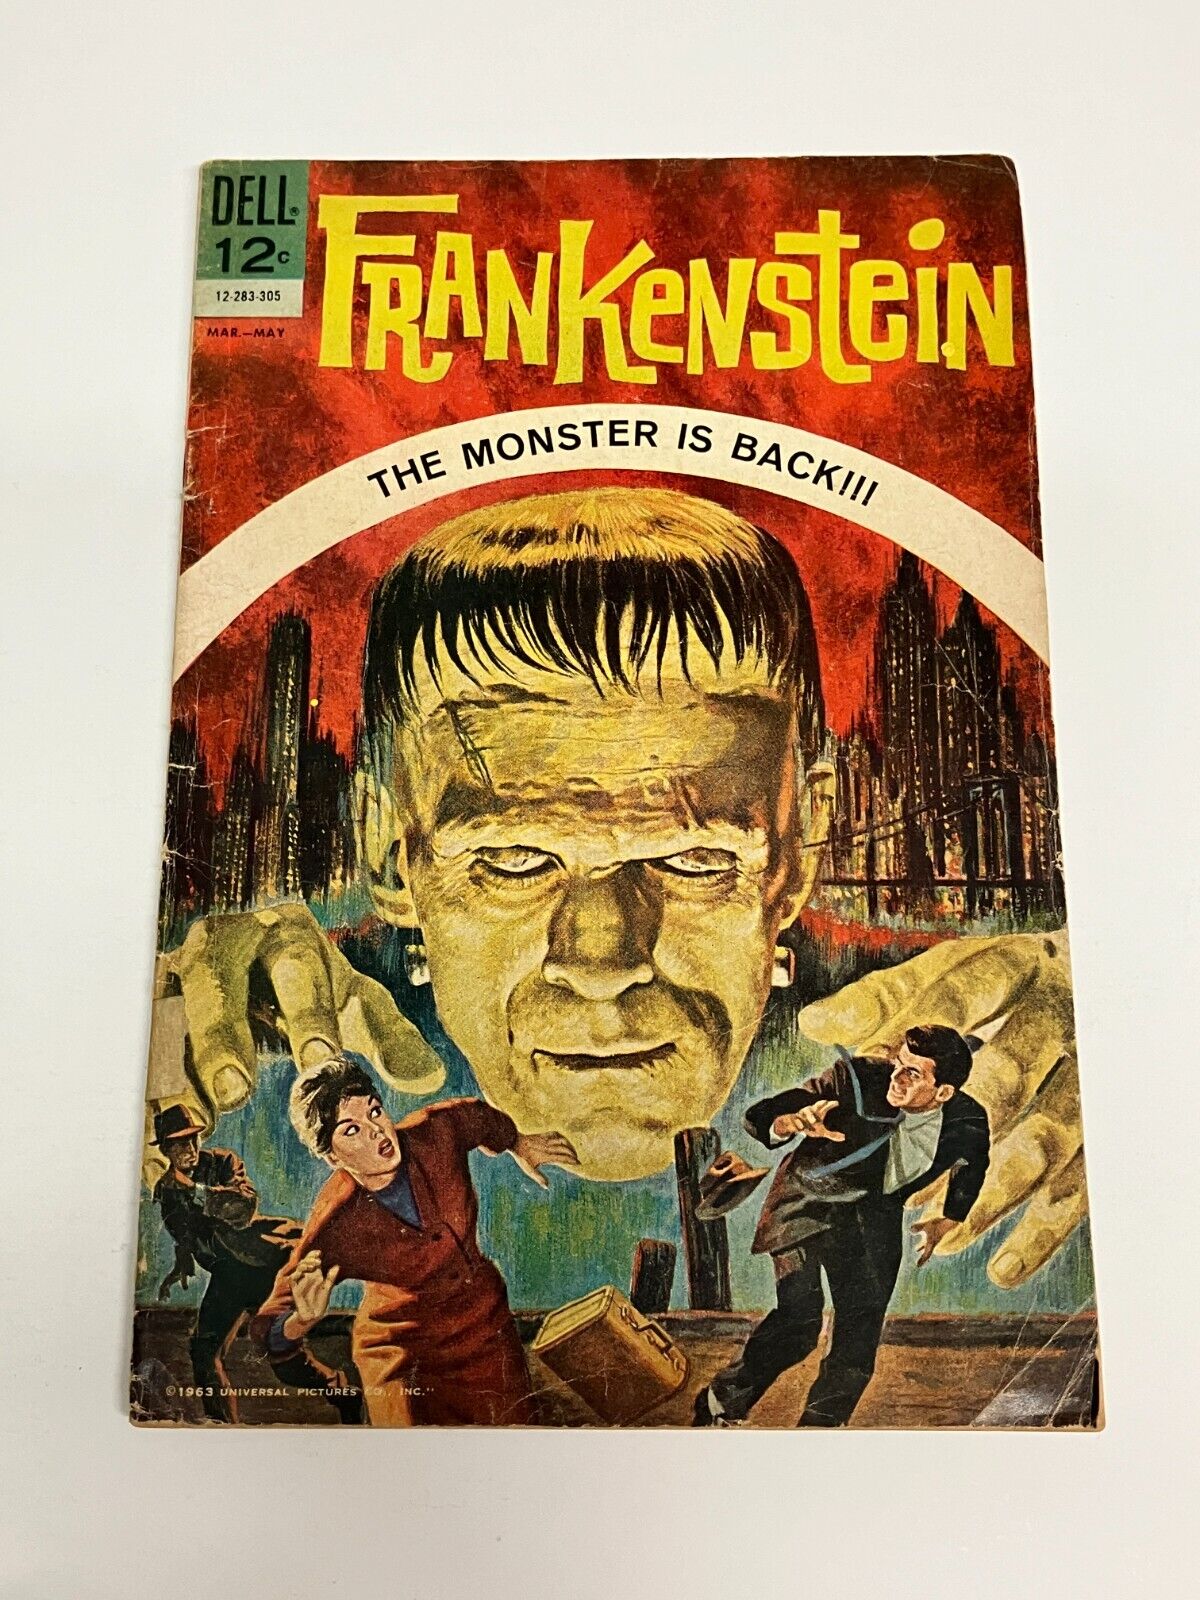 FRANKENSTEIN #1 (DELL Comics, 1963) The Monster is Back